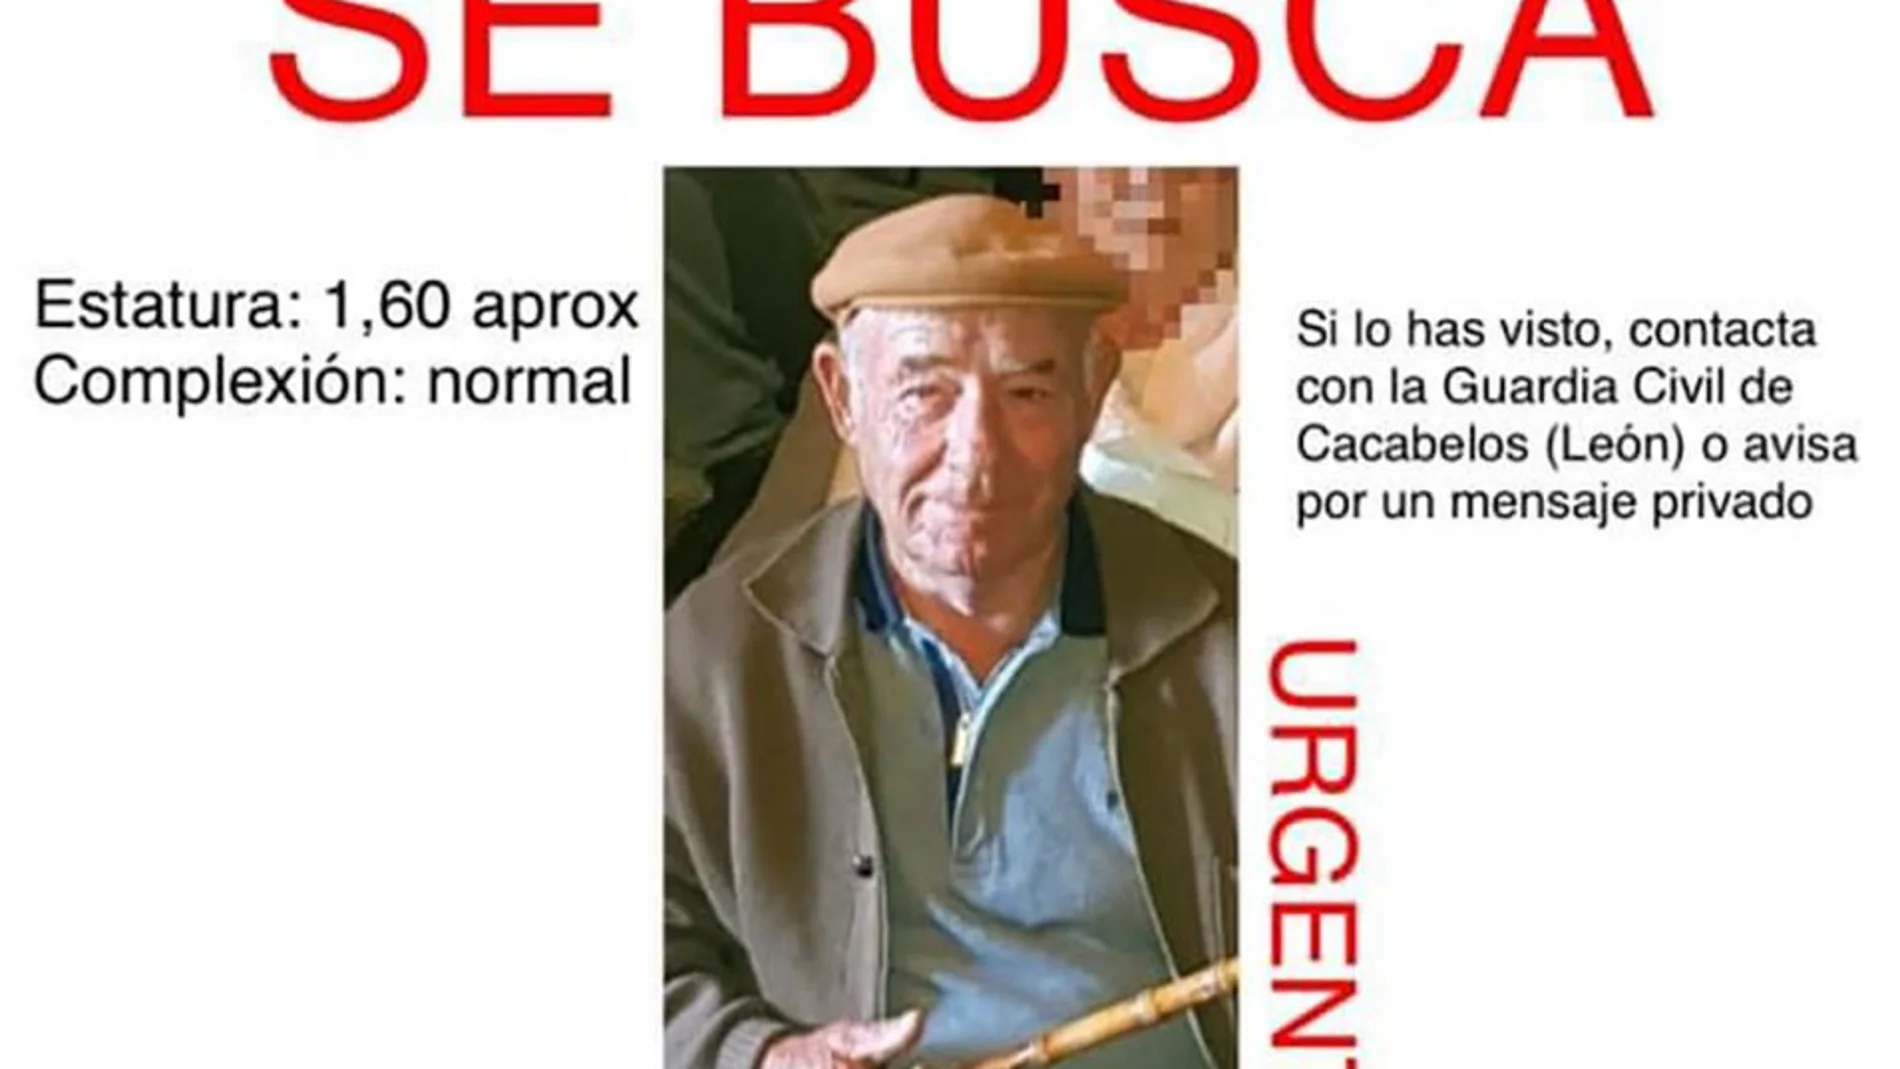 Imagen del cartel con el anciano desparecido